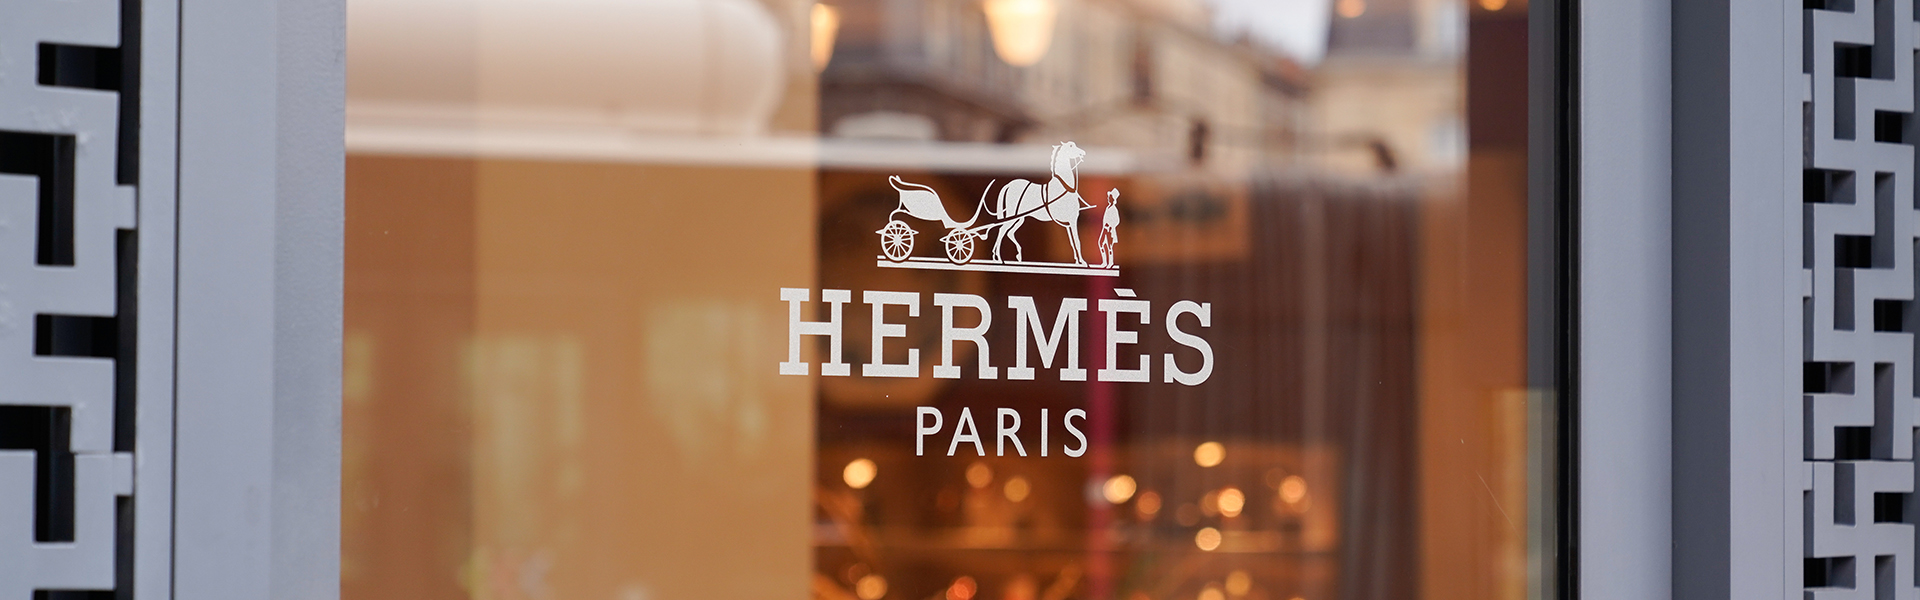 Store der Luxusmodemarke Hermes in Paris, Frankreich